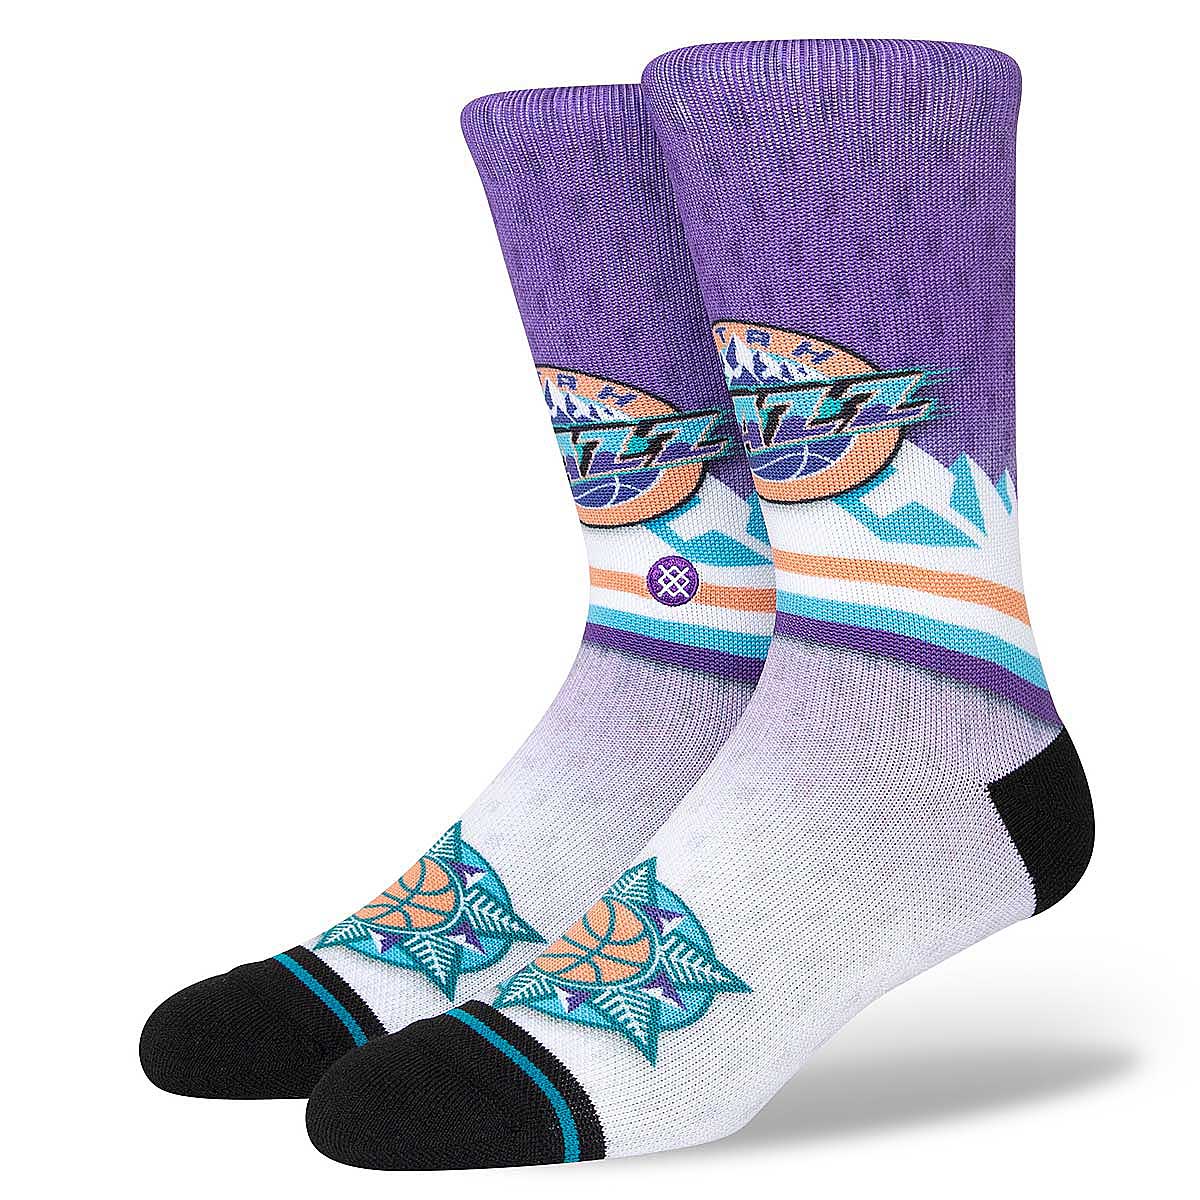 Stance Nba Utah Jazz Fader Crew Socks, Purple / Teal